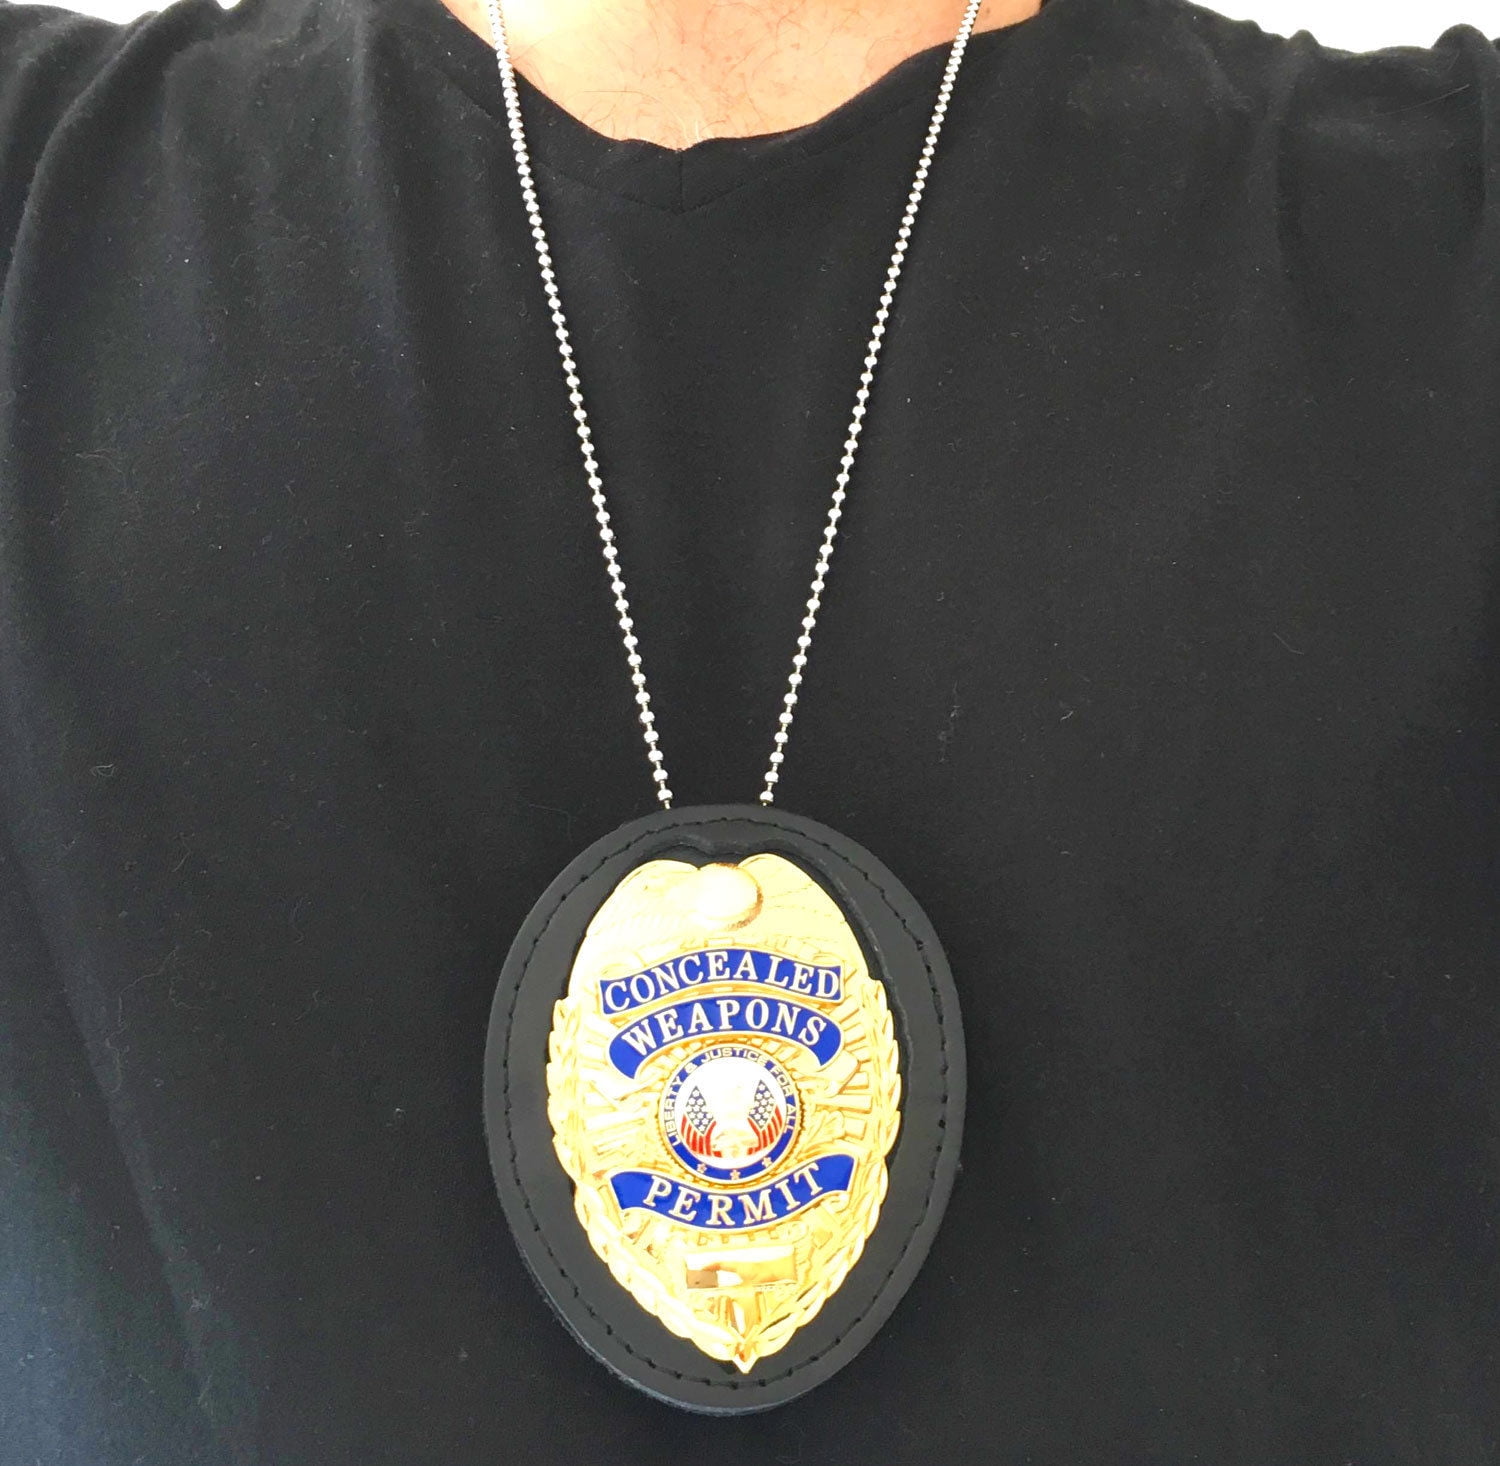  DSLSQD Police Badge Holder, Security Badge Holder